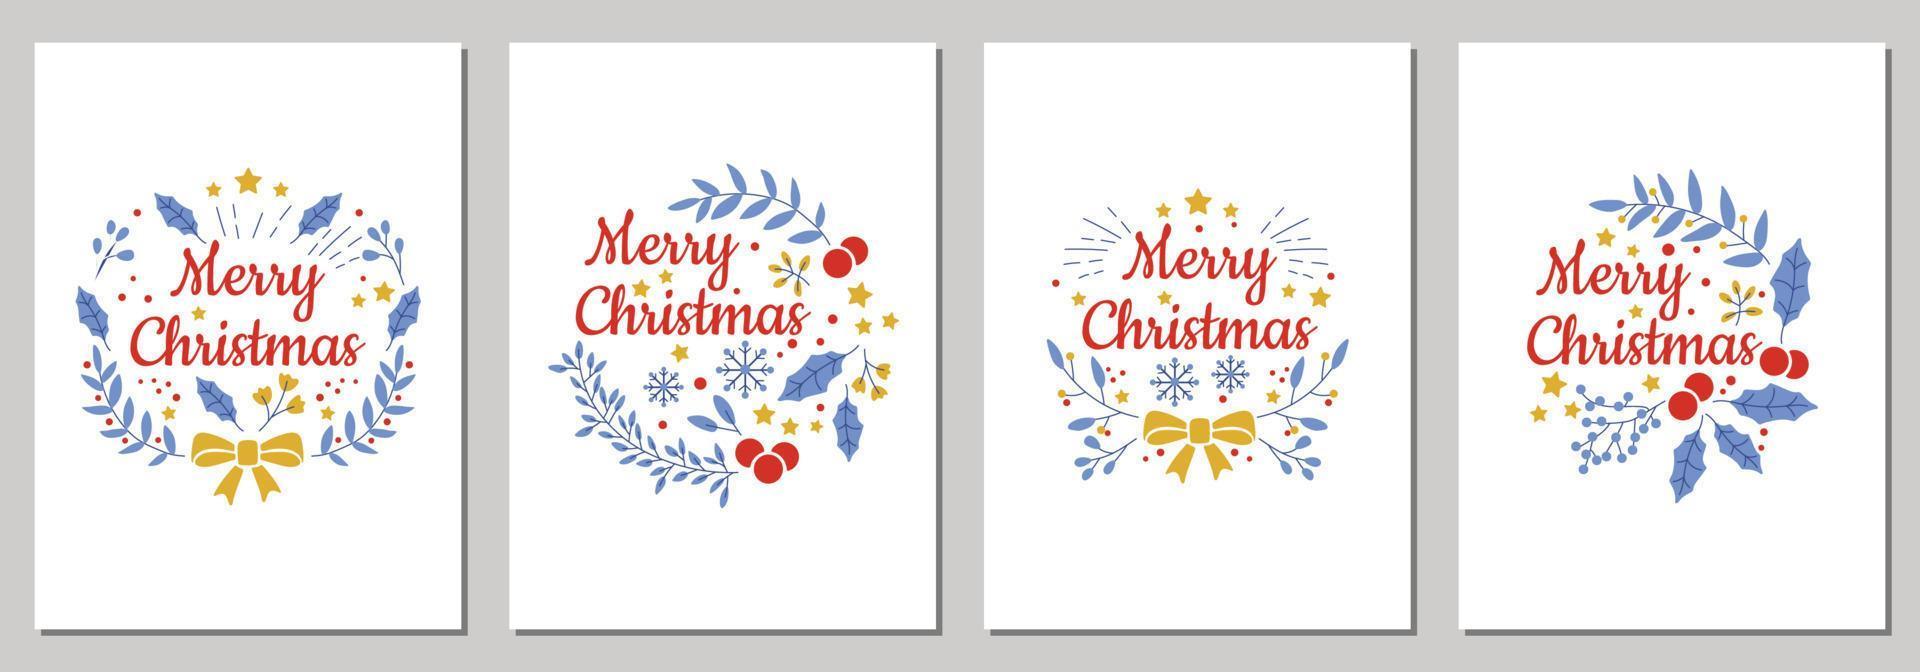 jul kort med glad jul med xmas dekorationer och typografi design. vektor illustration.